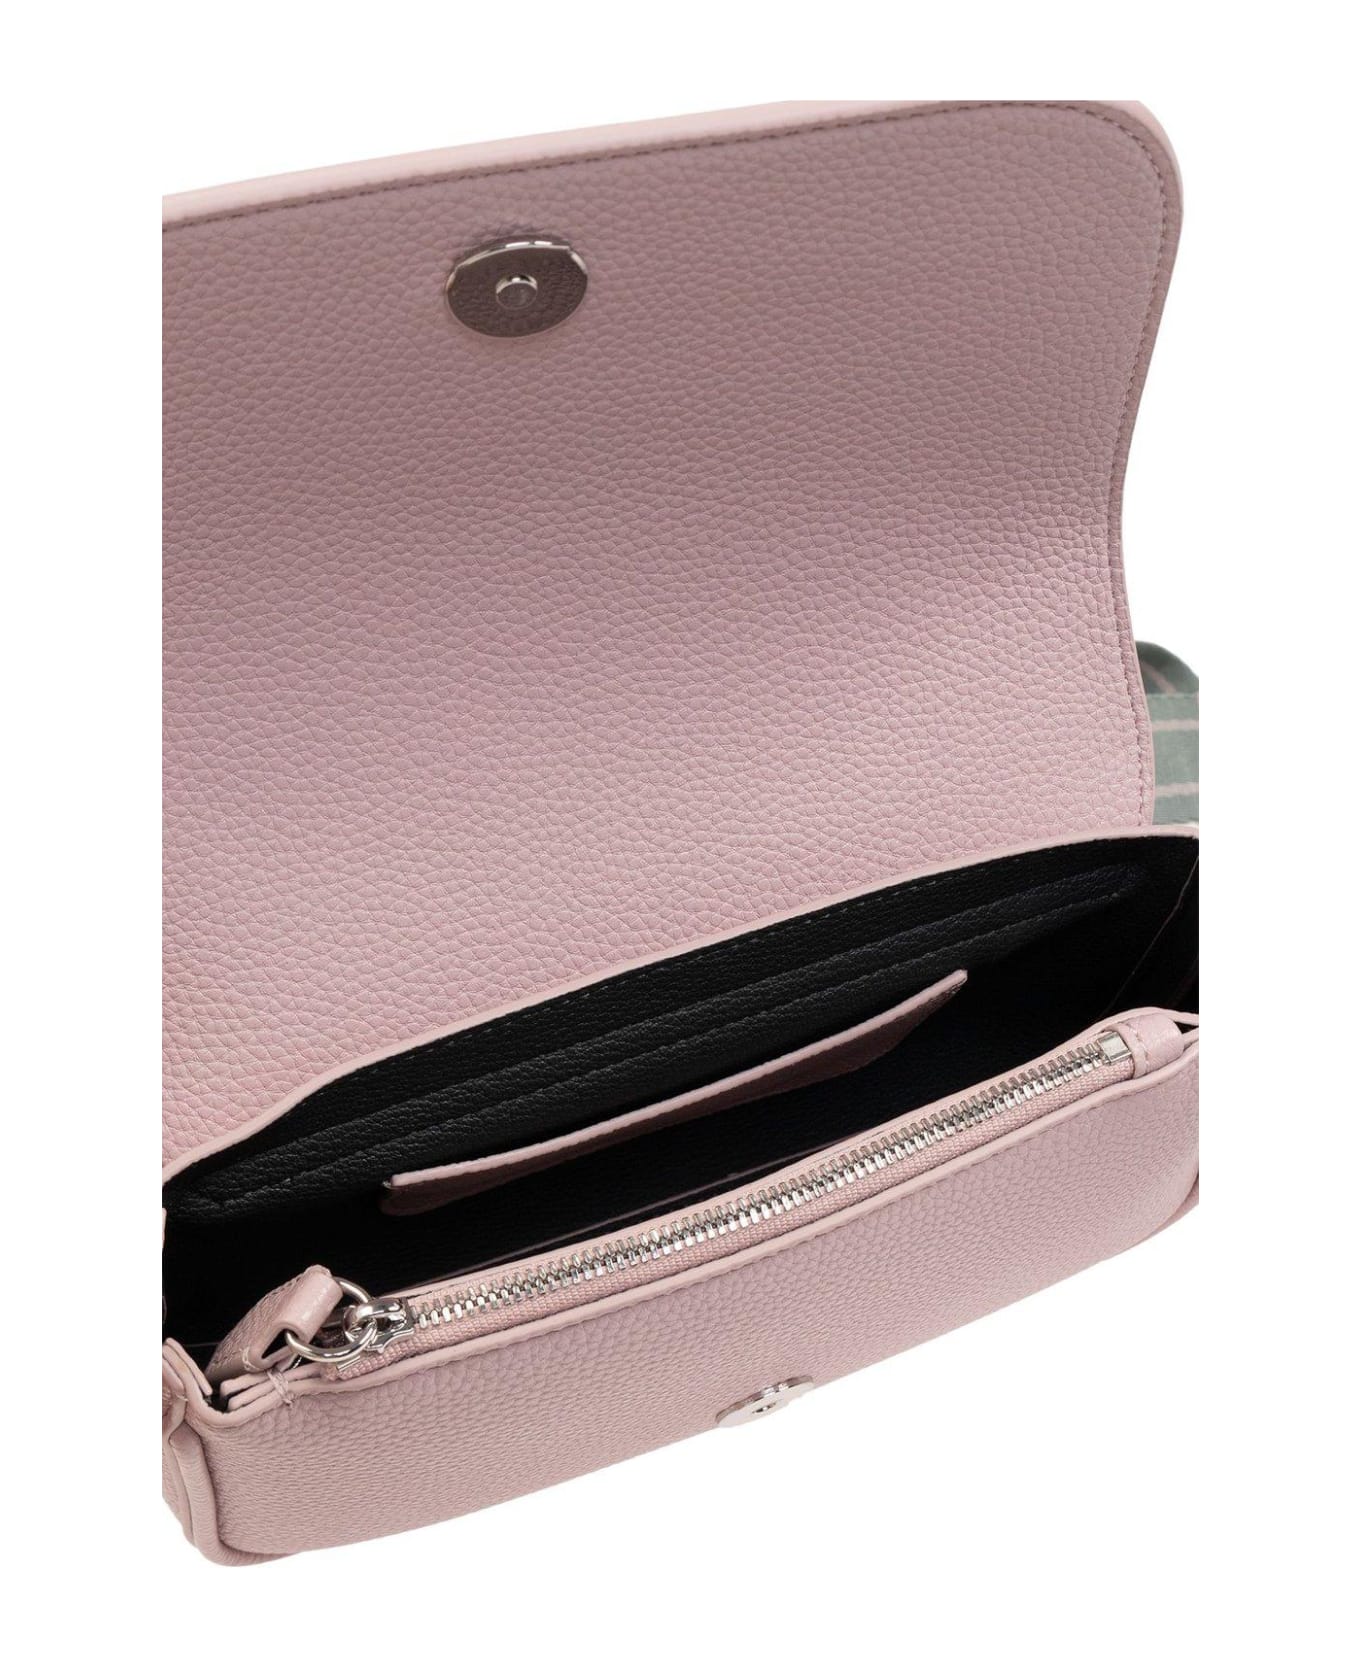 Emporio Armani Shoulder Bag With Logo - Pink